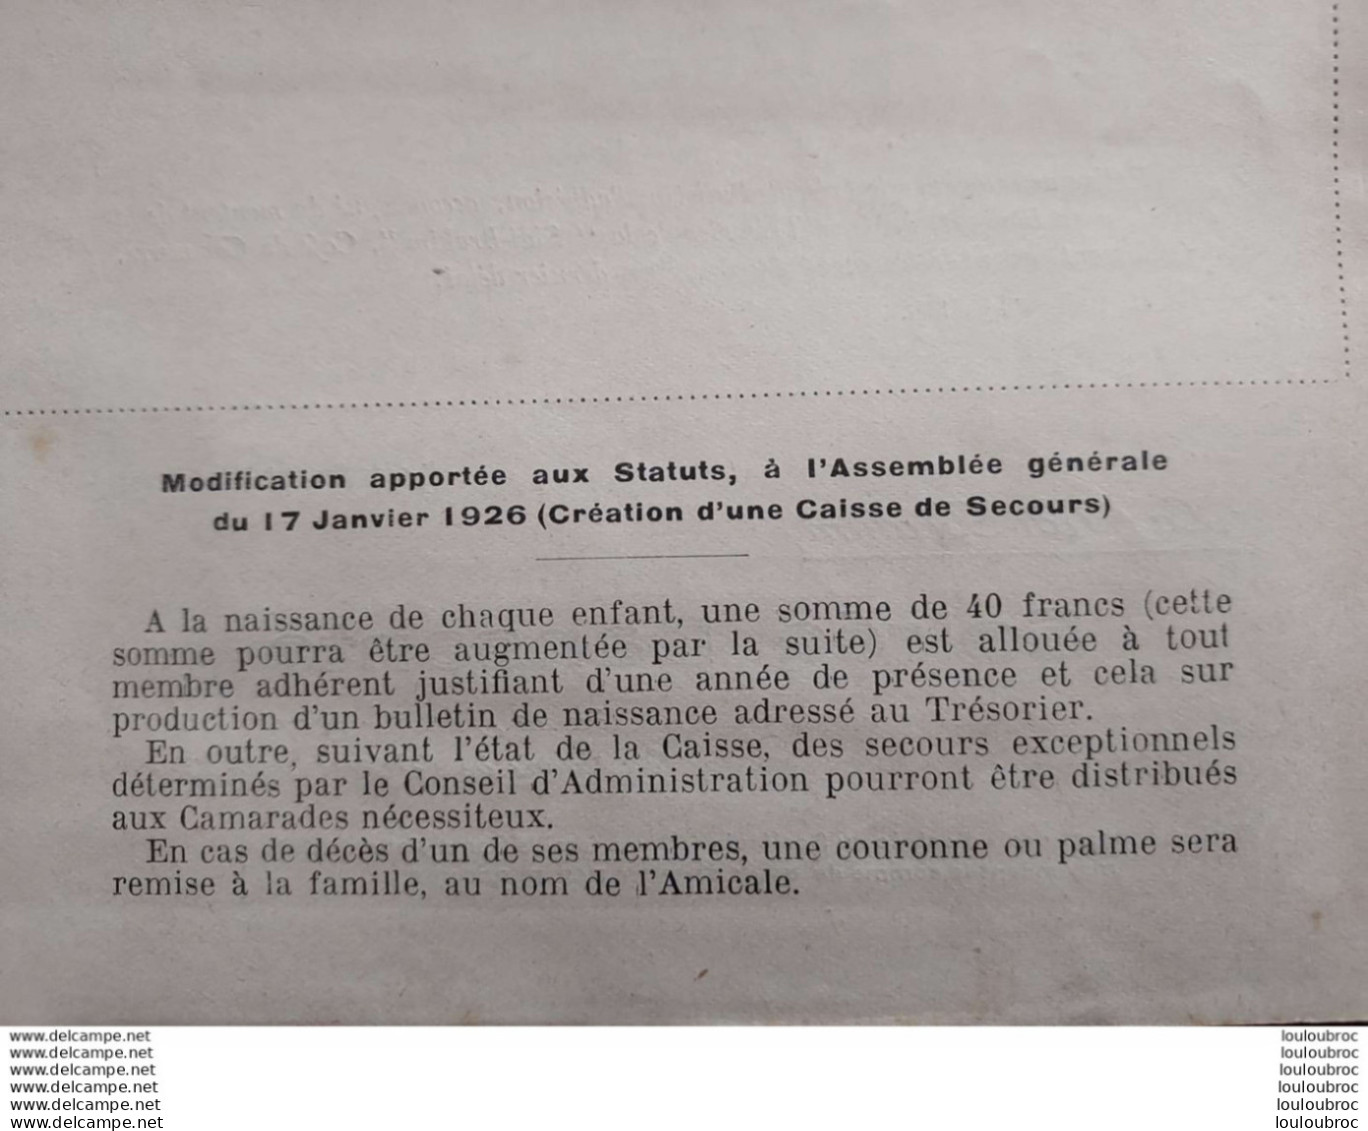 LA SIDI BRAHIM 01/1927 L'AMICALE DES ANCIENS CHASSEURS A PIED ET ALPINS 1926  LIVRET DE 8 PAGES - Documenten